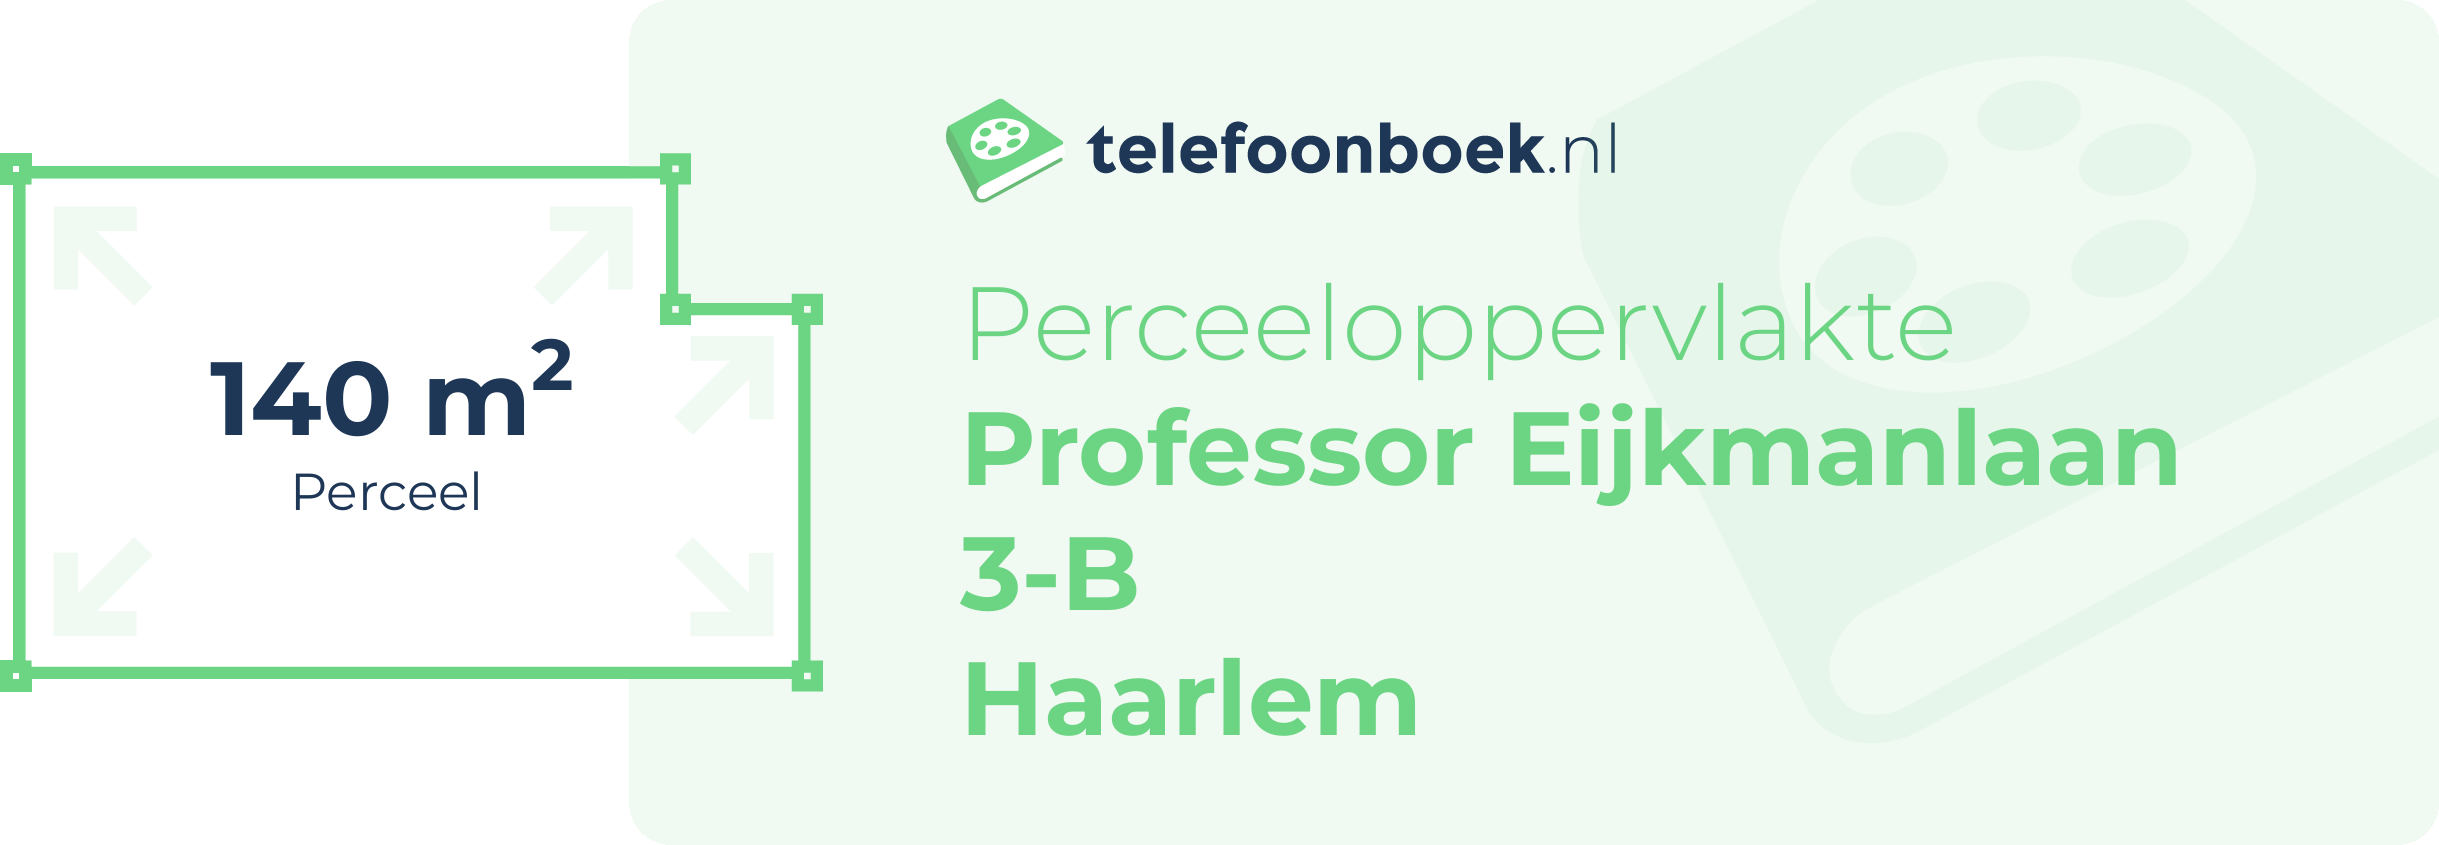 Perceeloppervlakte Professor Eijkmanlaan 3-B Haarlem